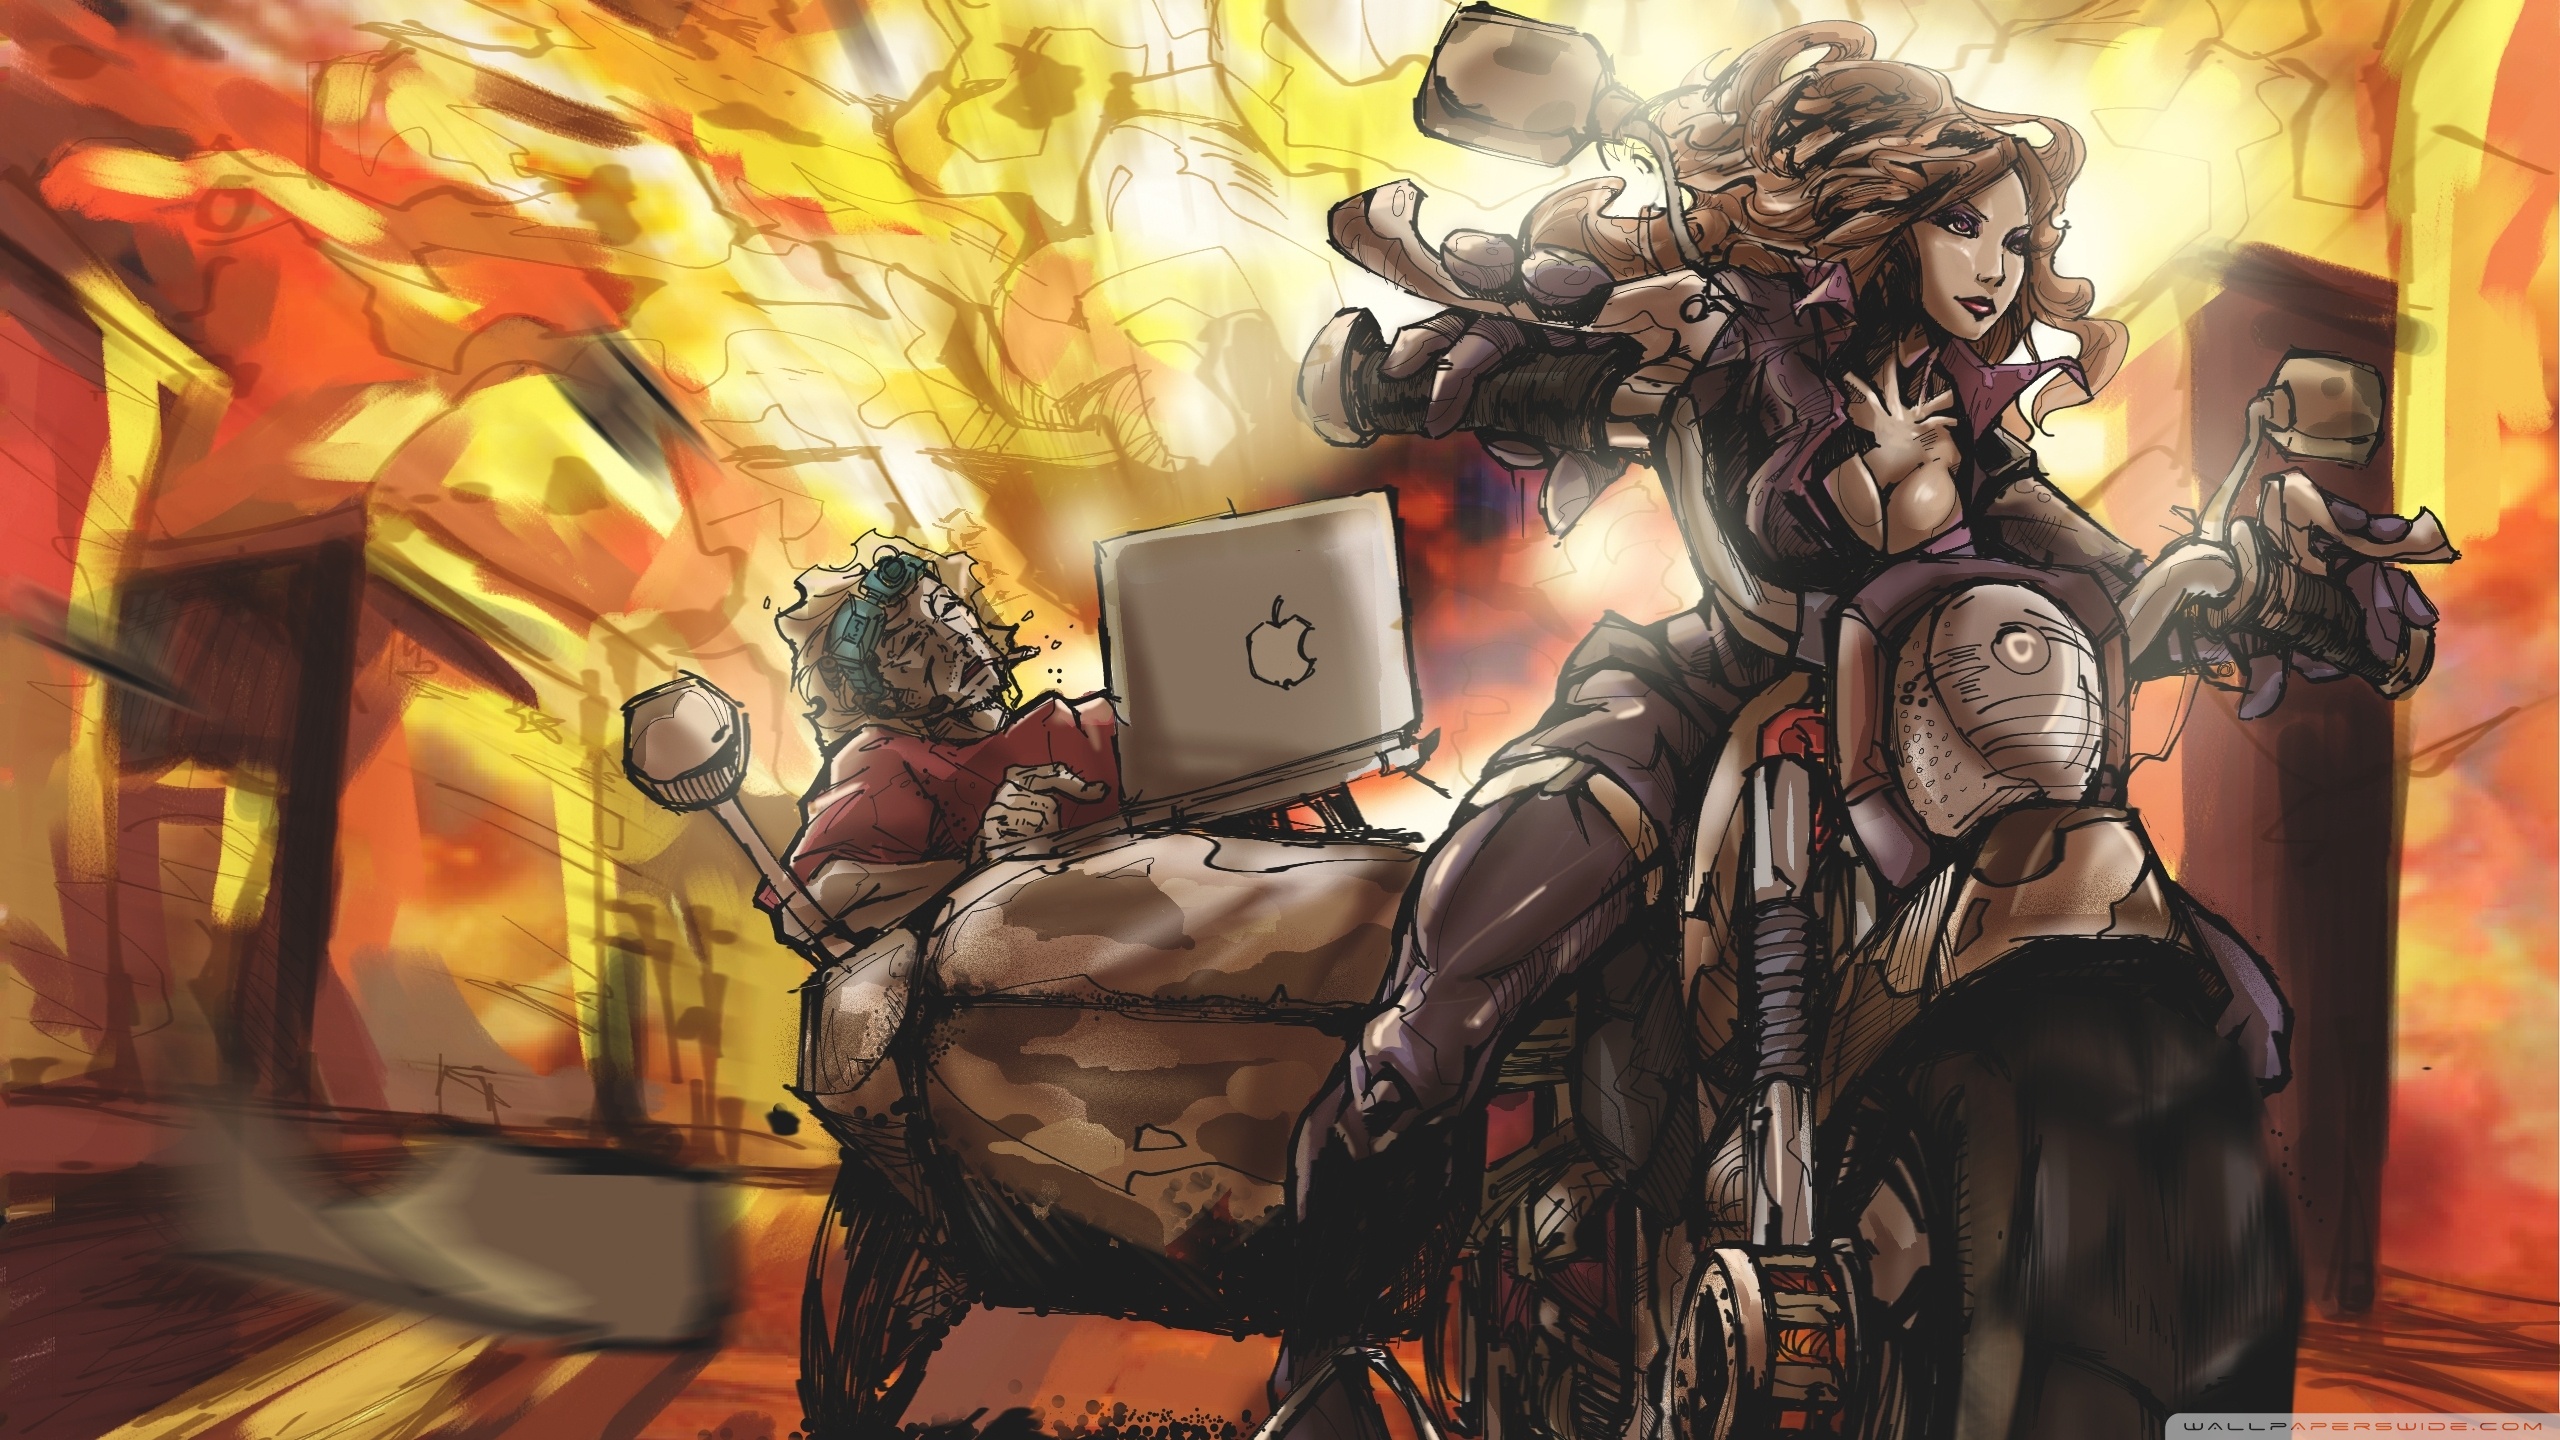 fondo de pantalla de superhéroe,cg artwork,juego de acción y aventura,arte,juego de pc,ilustración